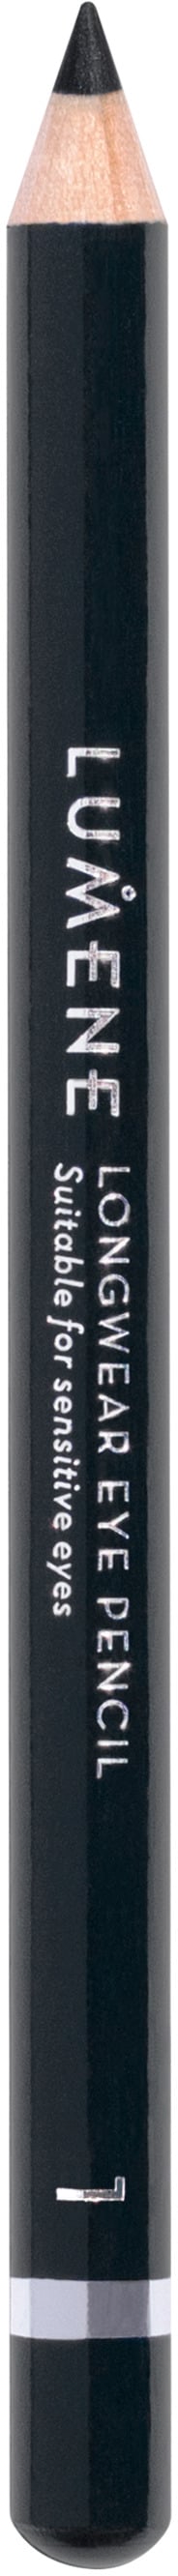 Lumene Longwear Eye Pencil 1 Black 1,14g